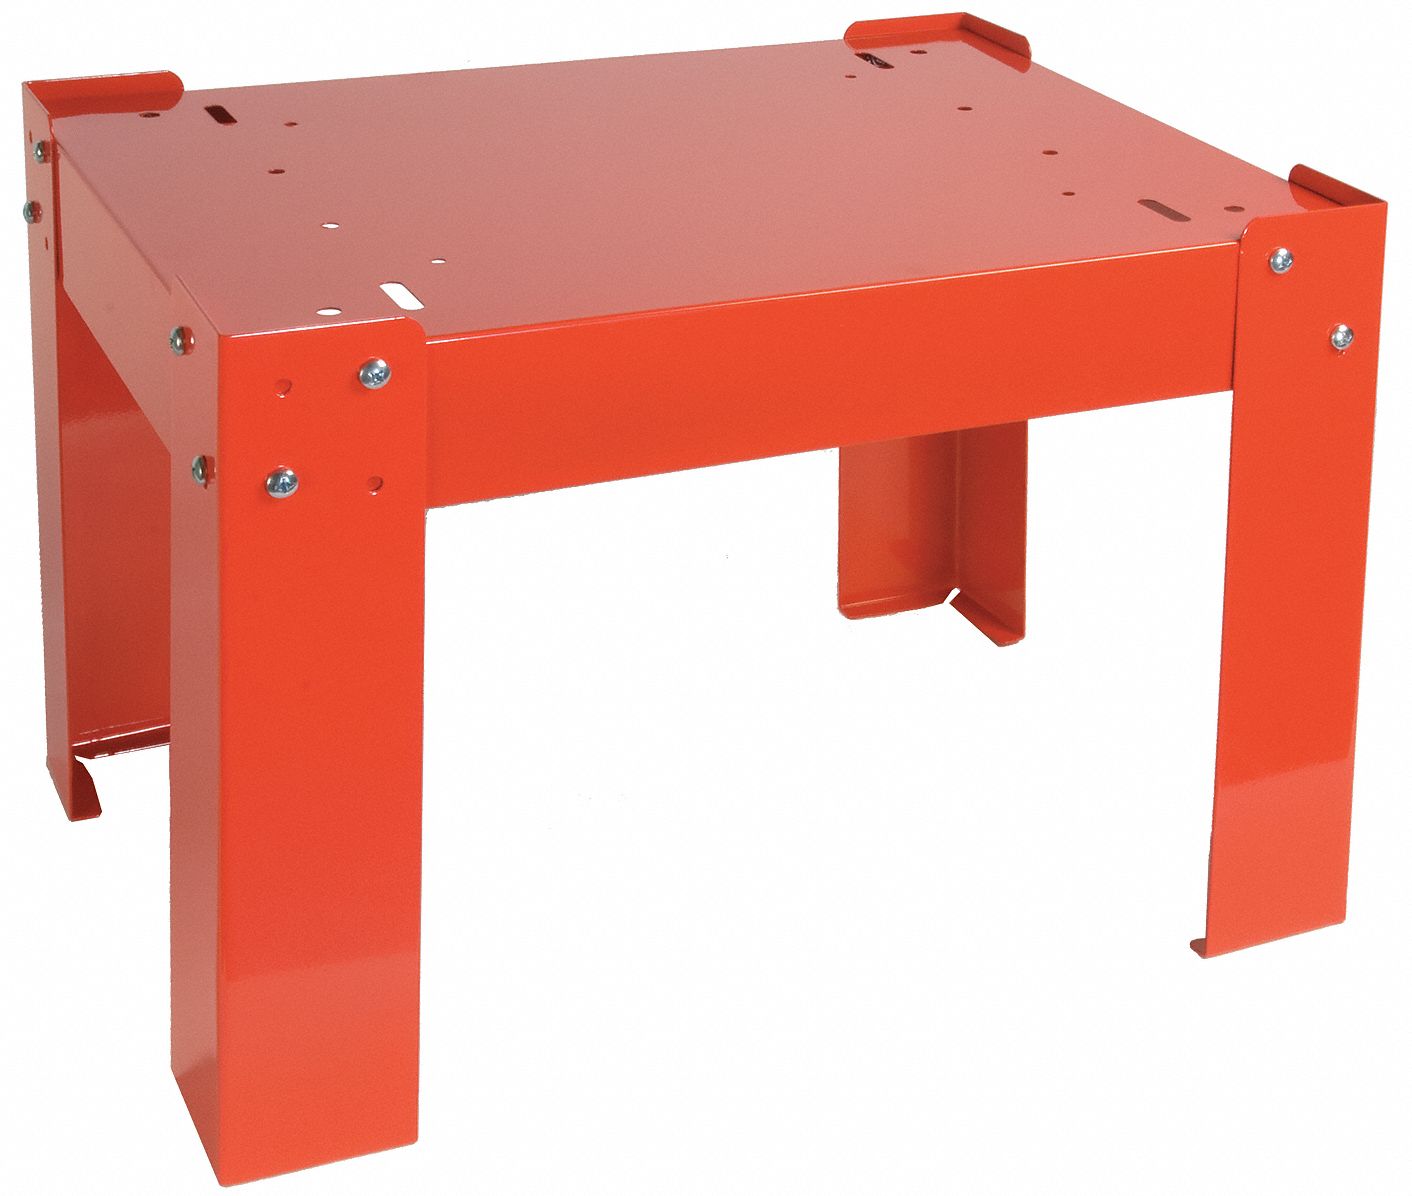 5JEN8 - Base for Slide Rack Cabinet D 16 1/4 Red